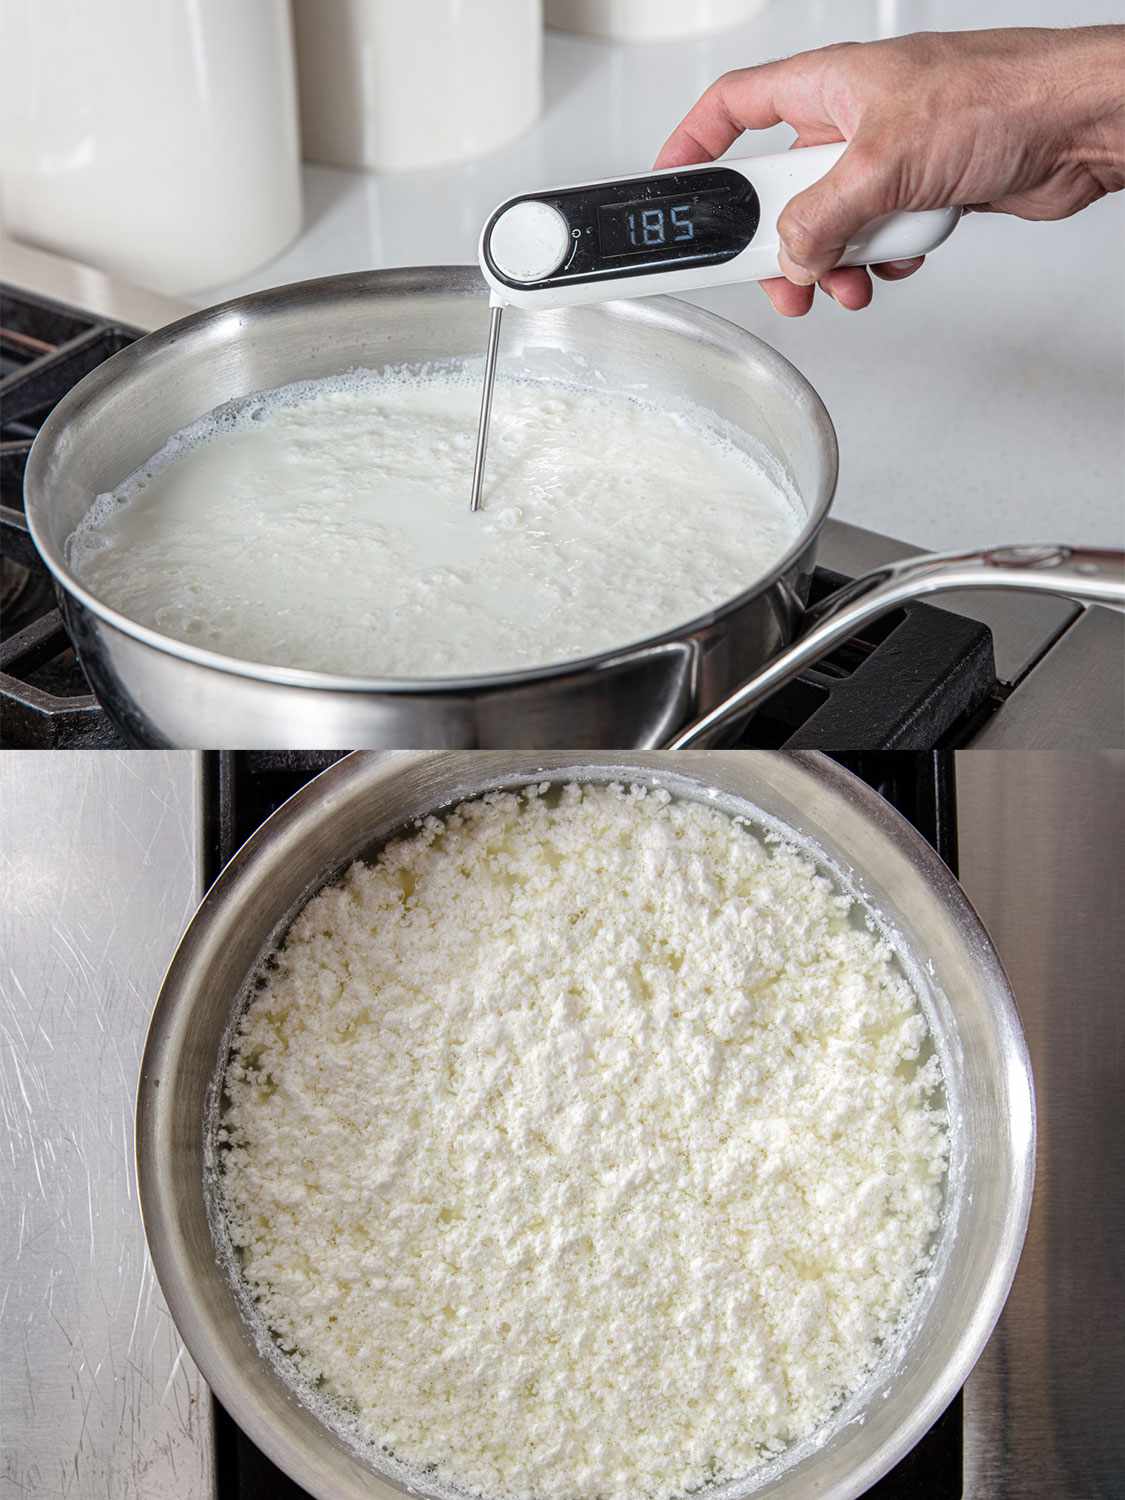 两个图像拼贴。上图:一只手拿着温度计，在沸腾的牛奶中显示185度。下:俯视图的锅显示新形成的牛奶凝乳